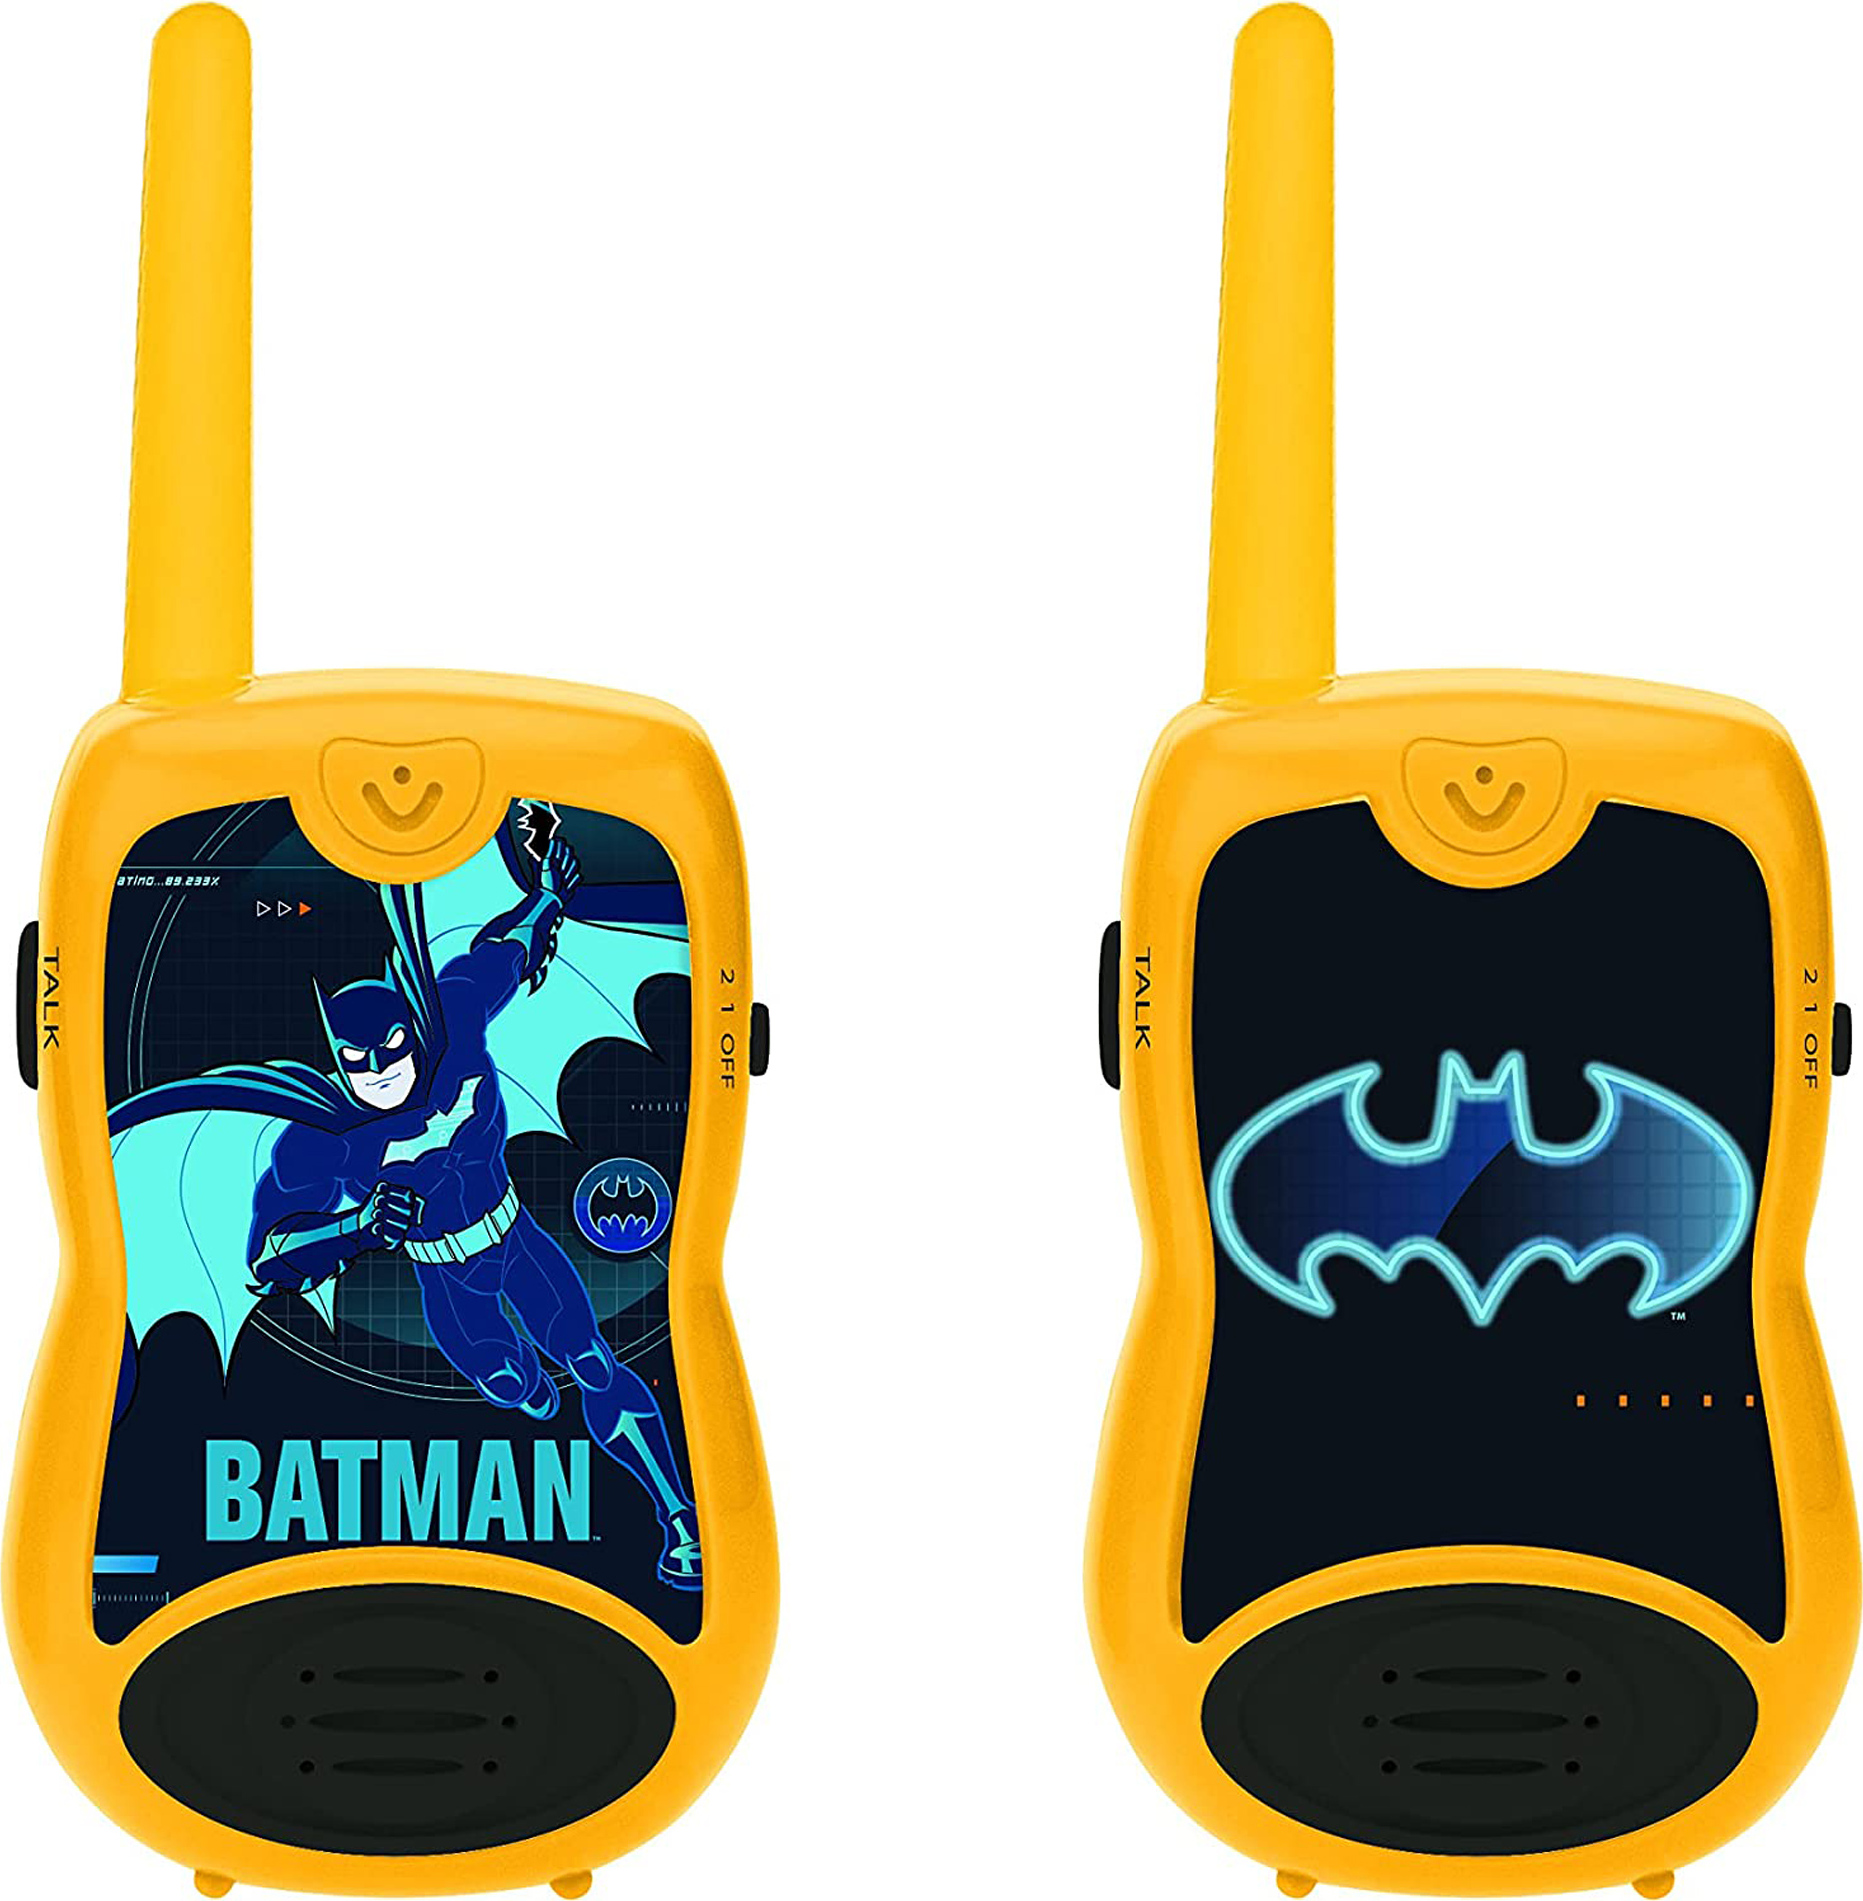 Vysílačky Batman s dosahem 120 metrů